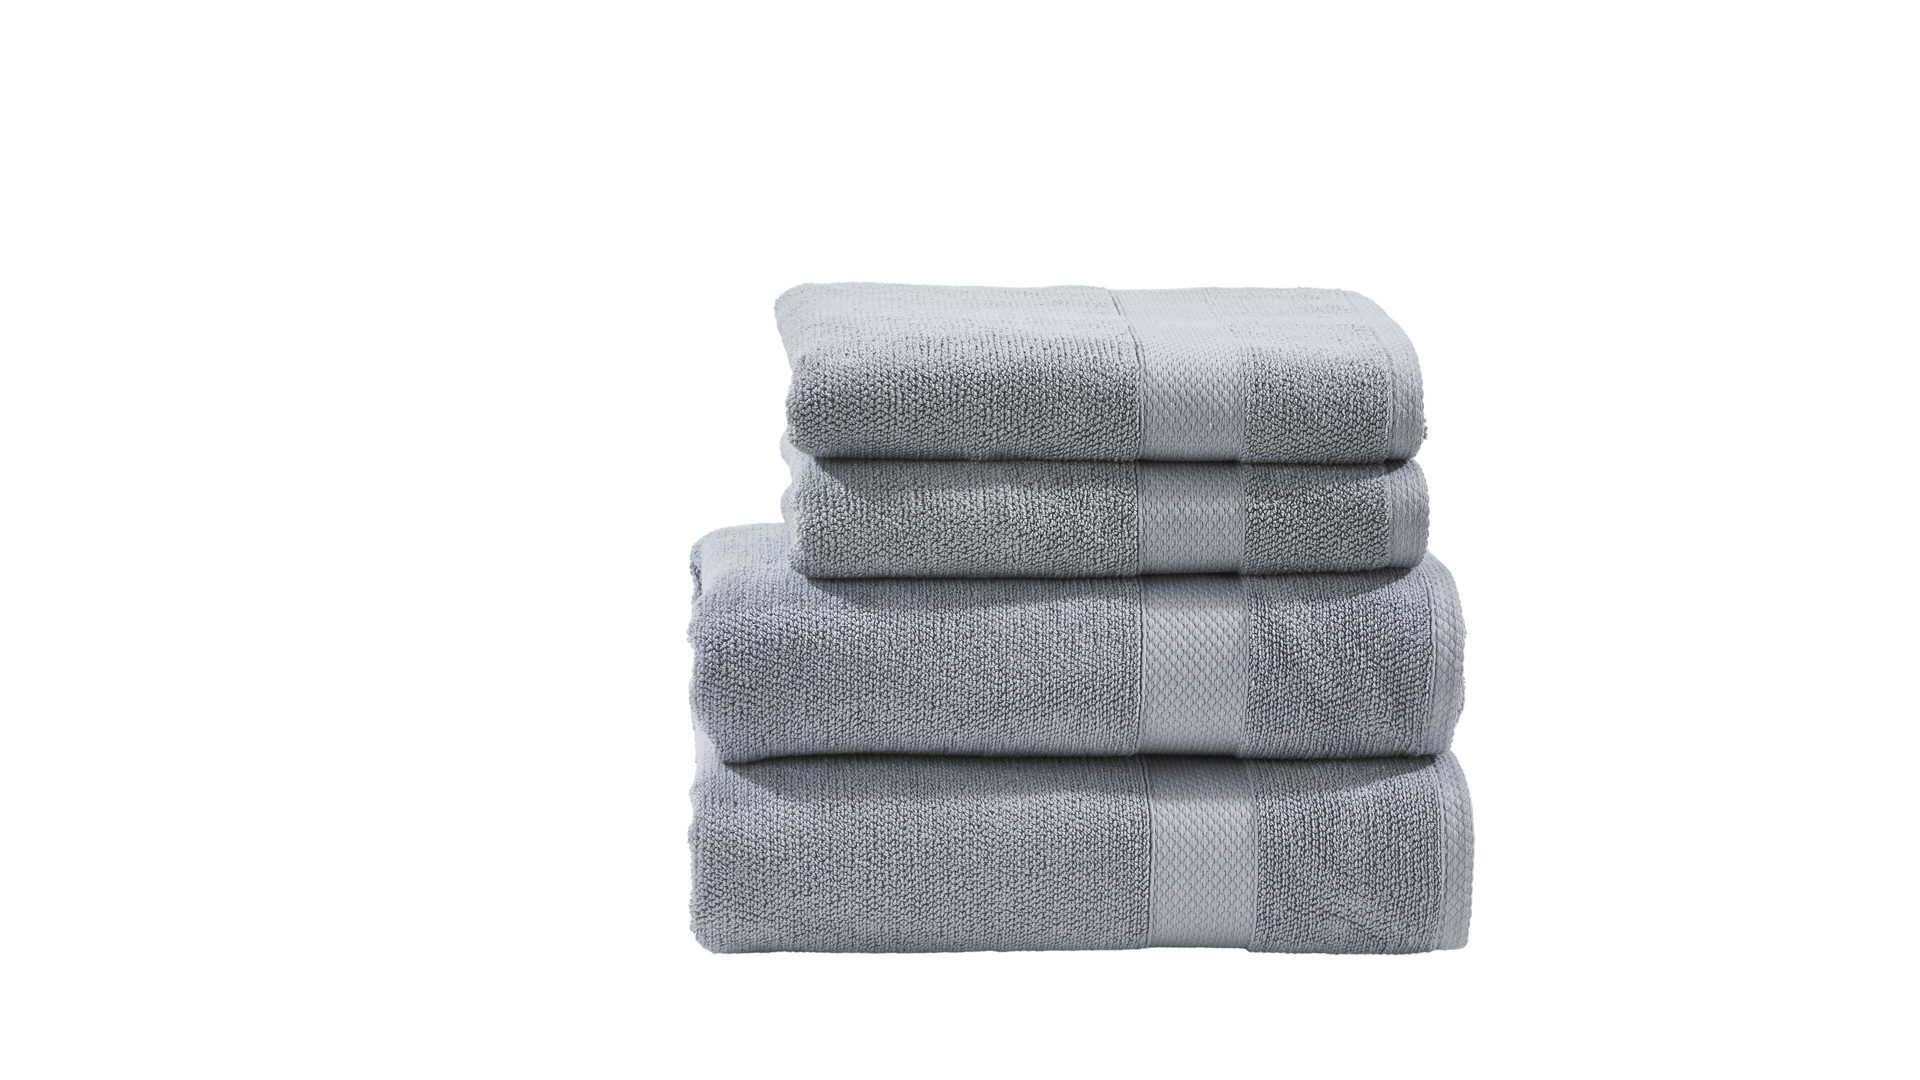 Handtuch-Set Done.® be different aus Stoff in Hellgrau DONE.® Handtuch-Set Deluxe silberfarbene Baumwolle – vierteilig